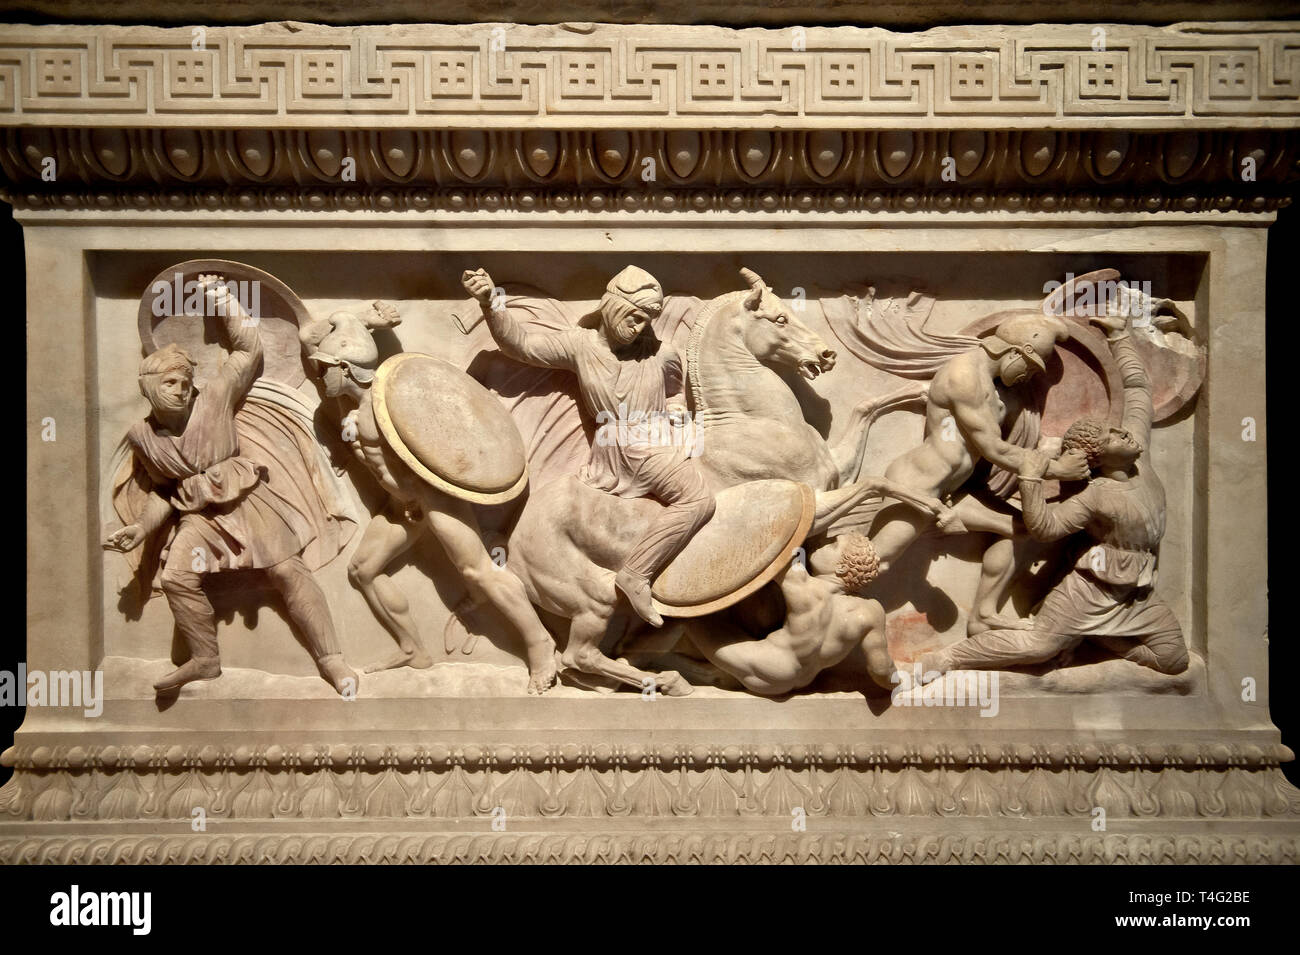 Esculturas en relieve griego de una batalla de Alejandro Magno ( Alejandro III de Macedonia )4 ciento BC. Sarcófago de mármol Pentelic parido desde la R Foto de stock